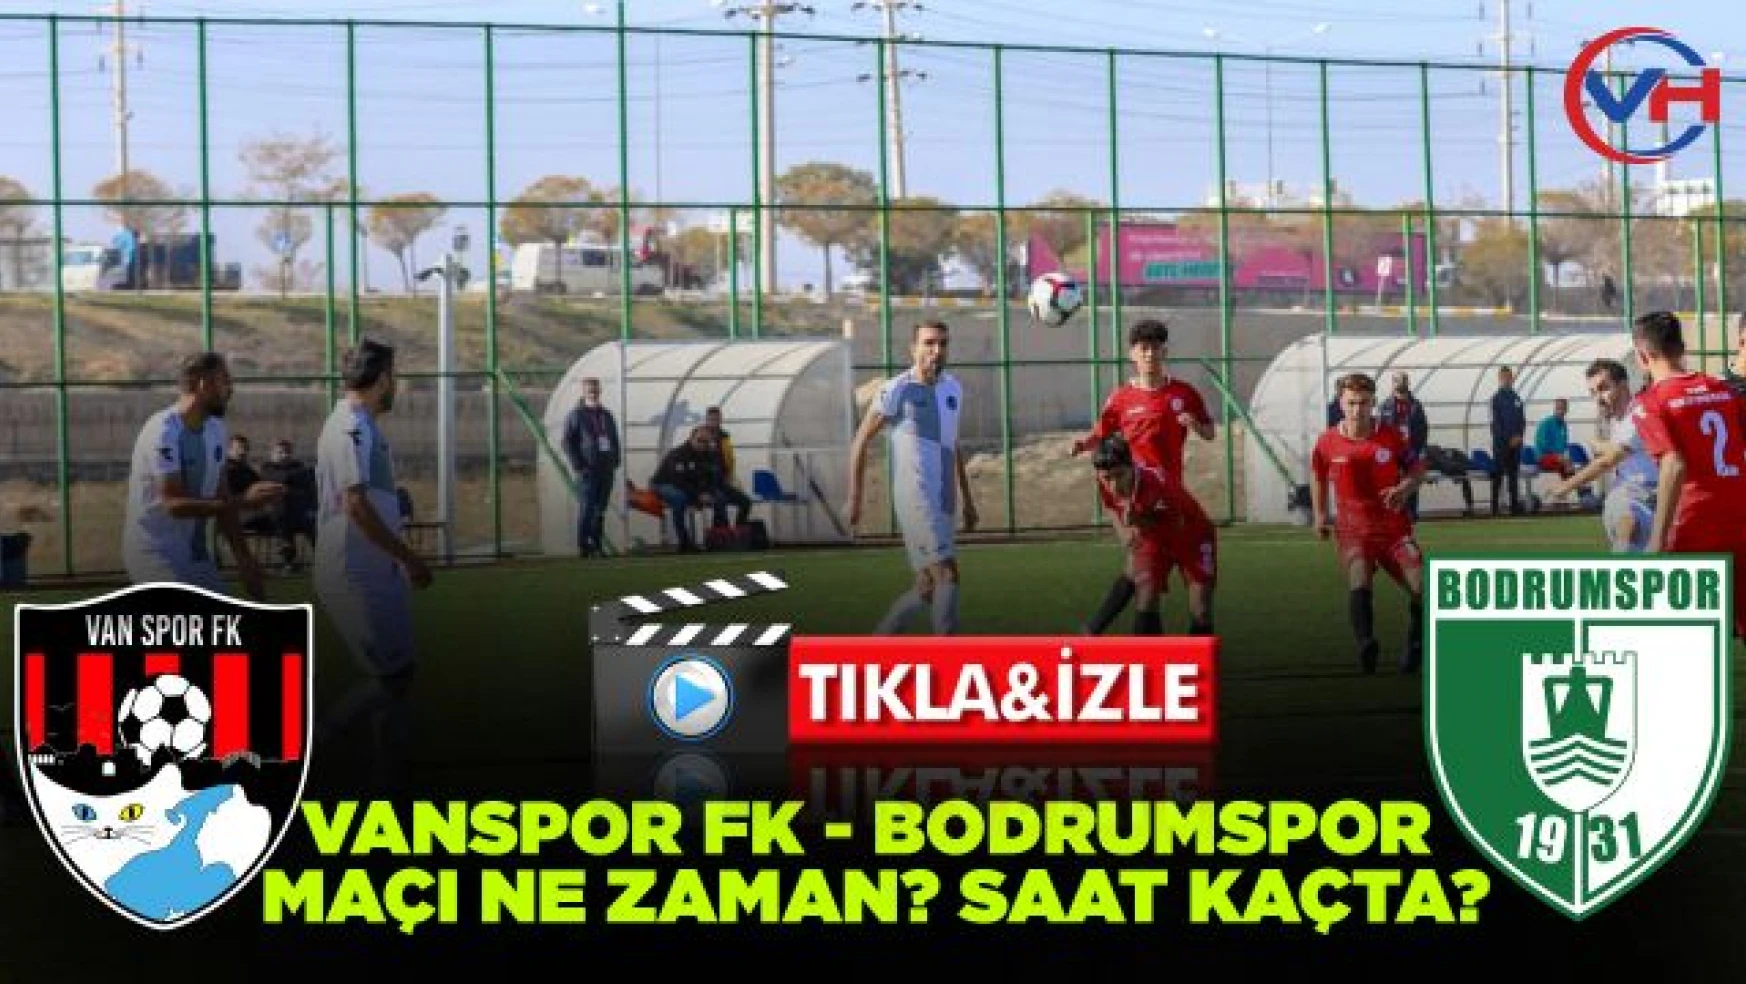 Vanspor FK - Bodrumspor Maçı ne zaman? saat kaçta?